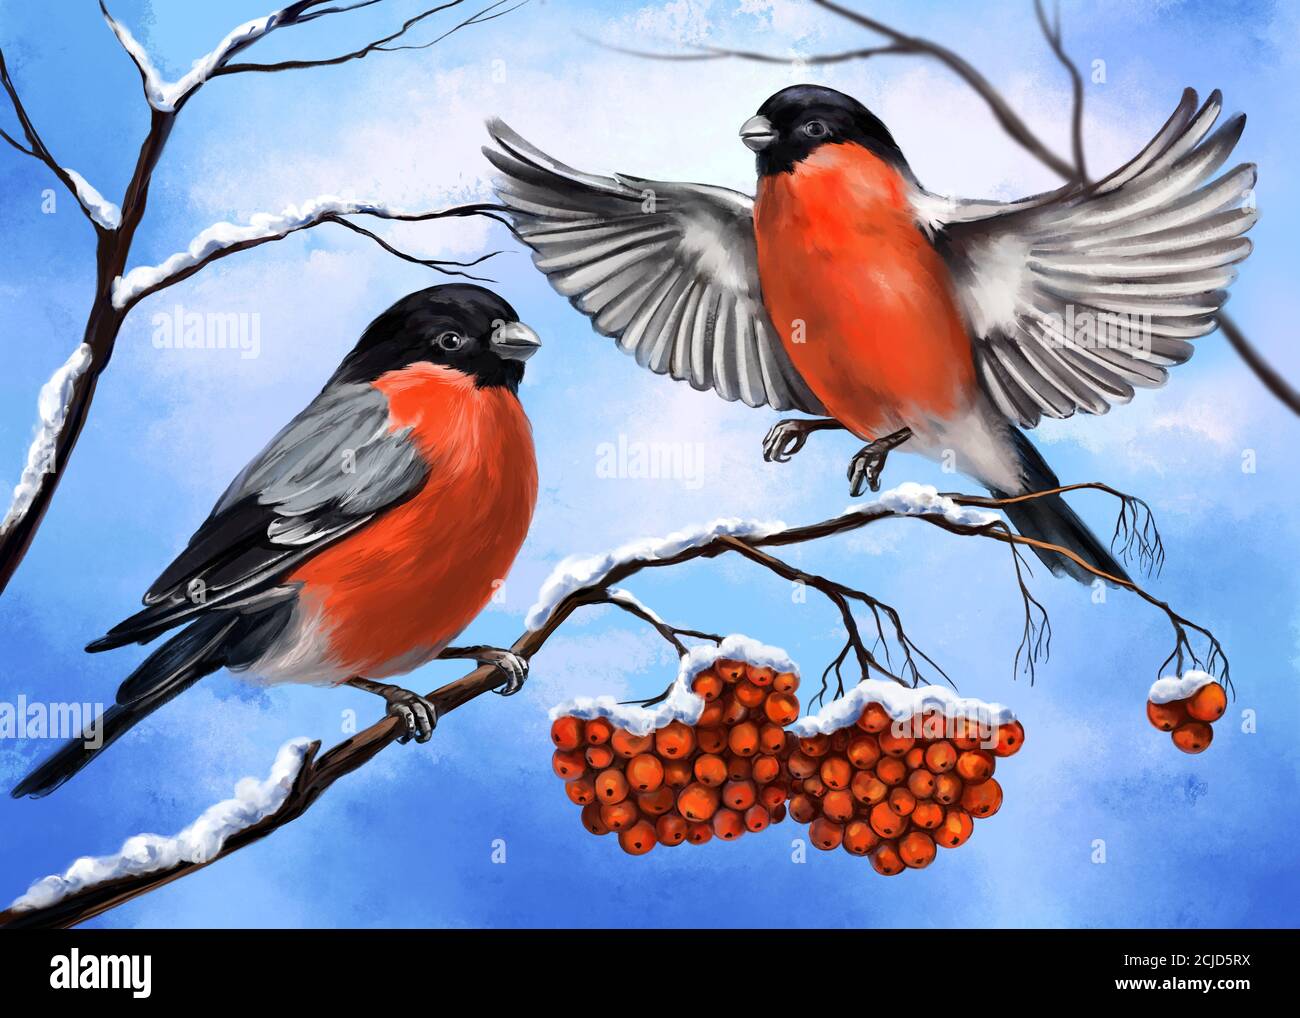 oiseaux bullfinches sur une branche de l'ashberry, hiver, illustration d'art peint avec aquarelles Banque D'Images